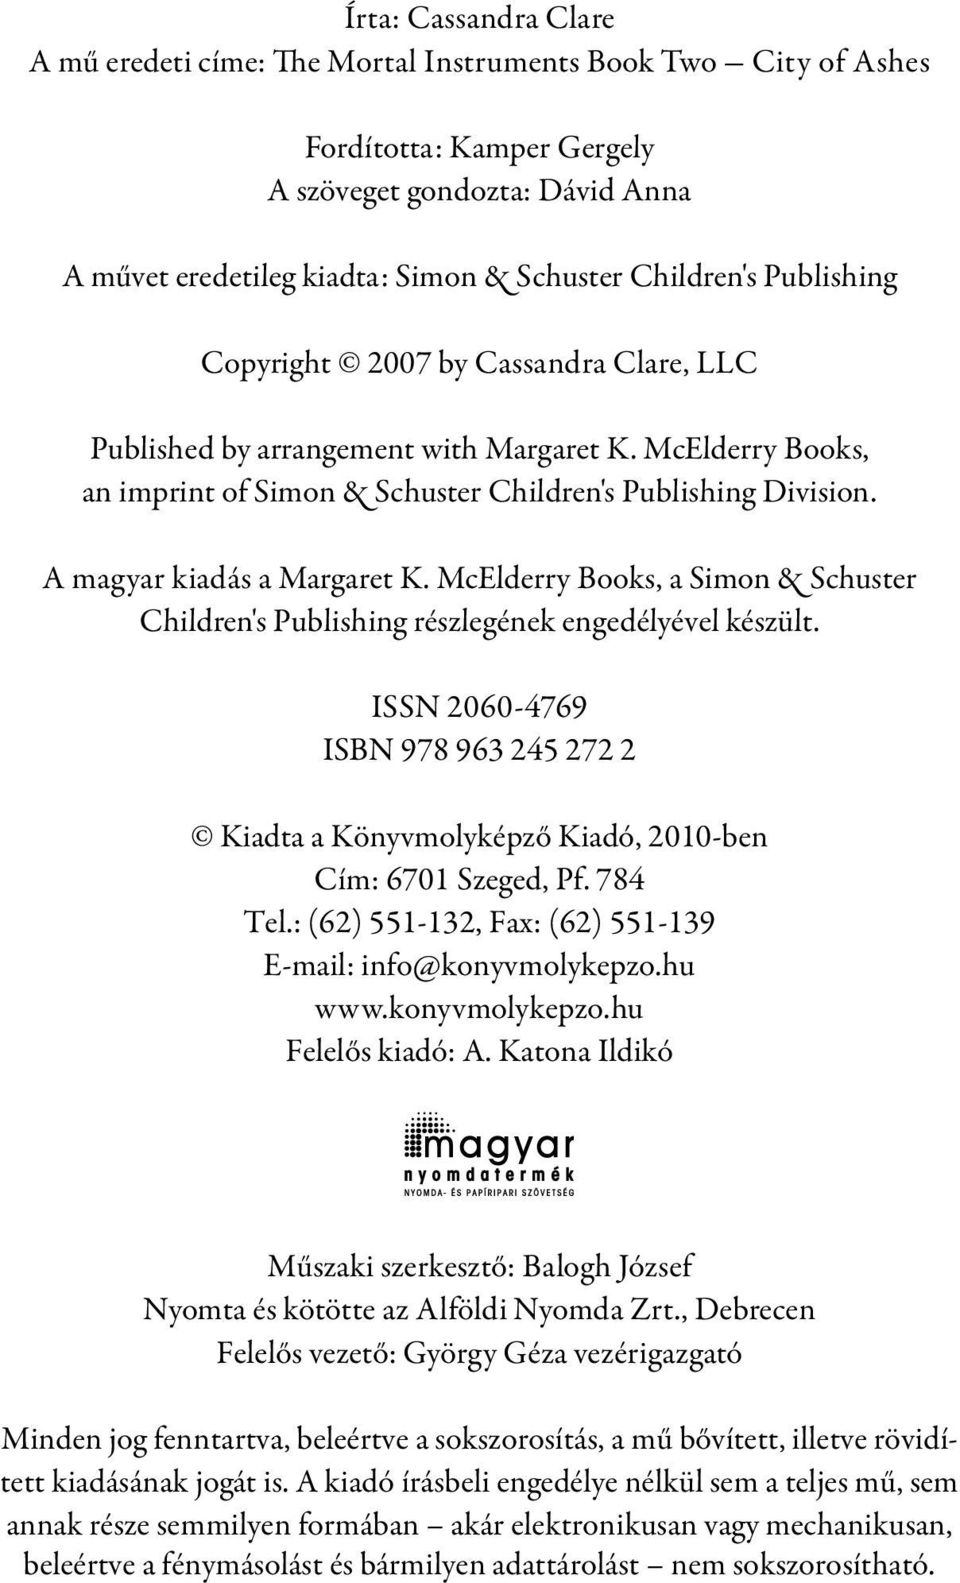 A magyar kiadás a Margaret K. McElderry Books, a Simon & Schuster Children's Publishing részlegének engedélyével készült.